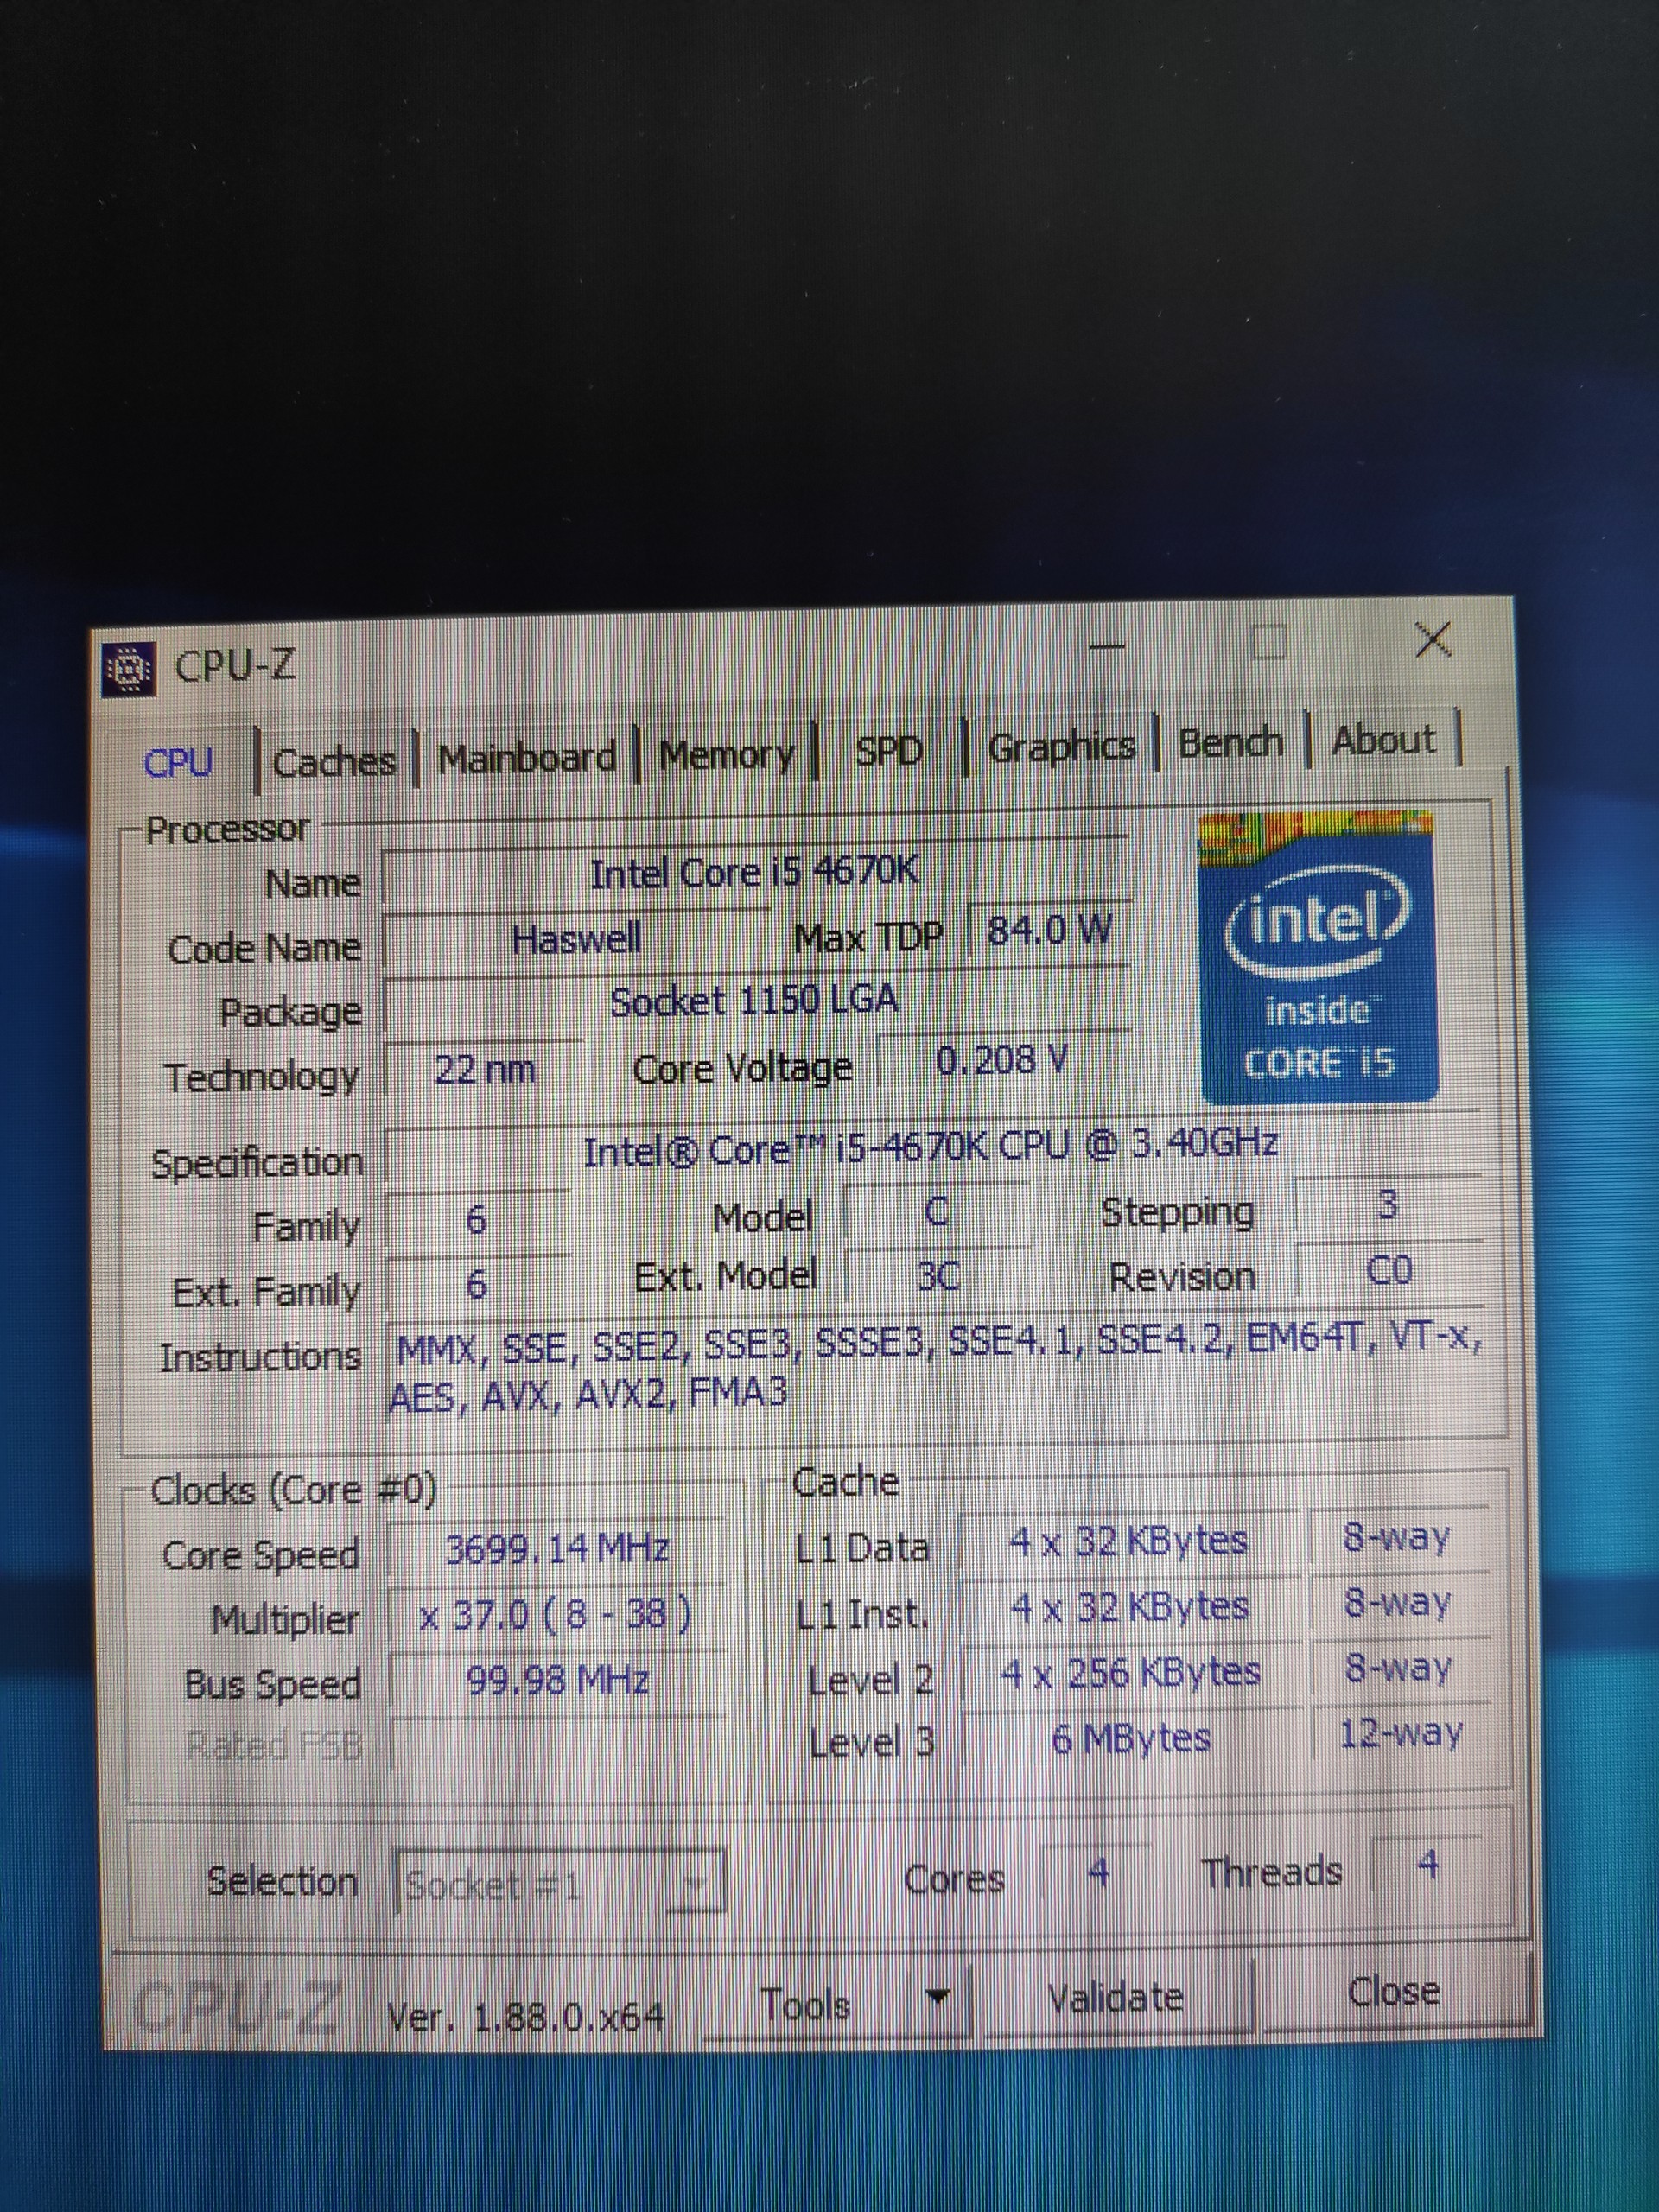 (SATILDI) Intel Core i5 4670k // MSI Z87-G45 Anakart // Gskill RipjawsX 2133mhz 8GB